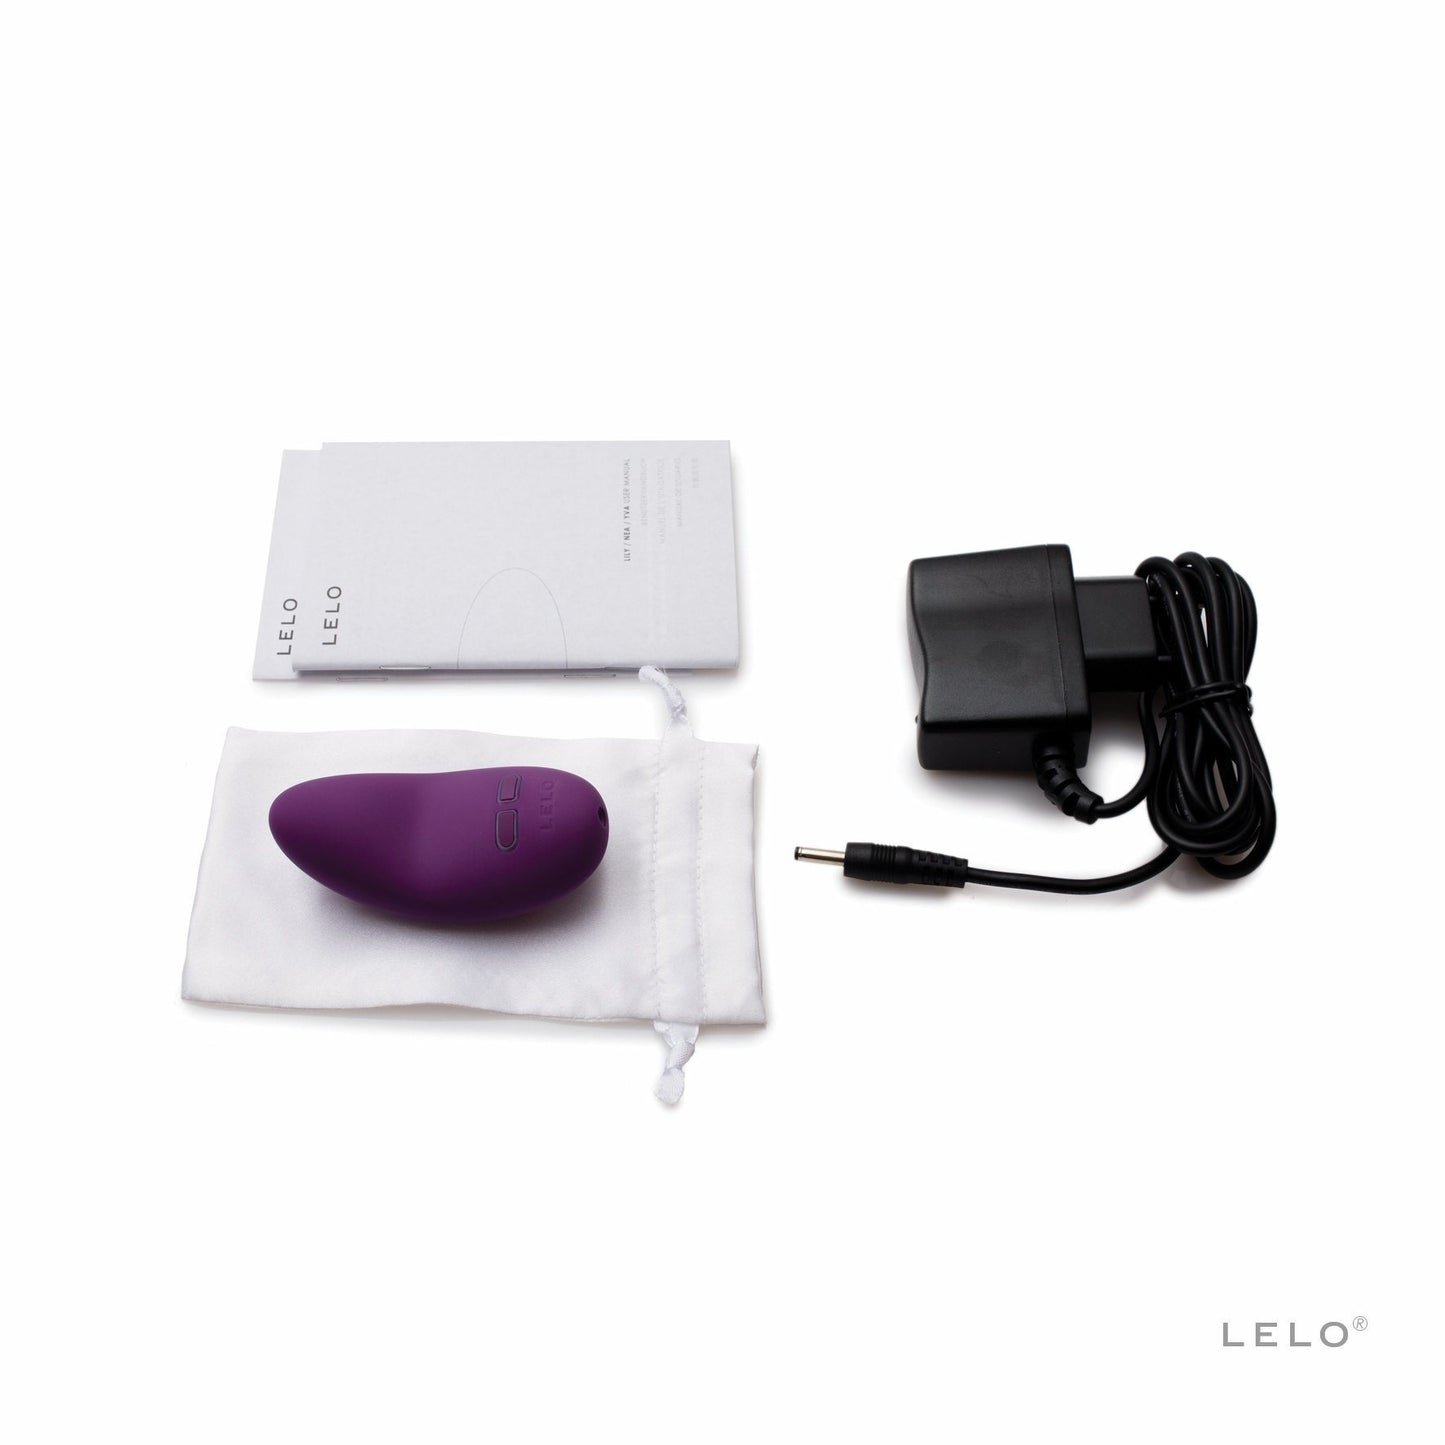 LELO Lily Luxury Rechargeable Vibrator